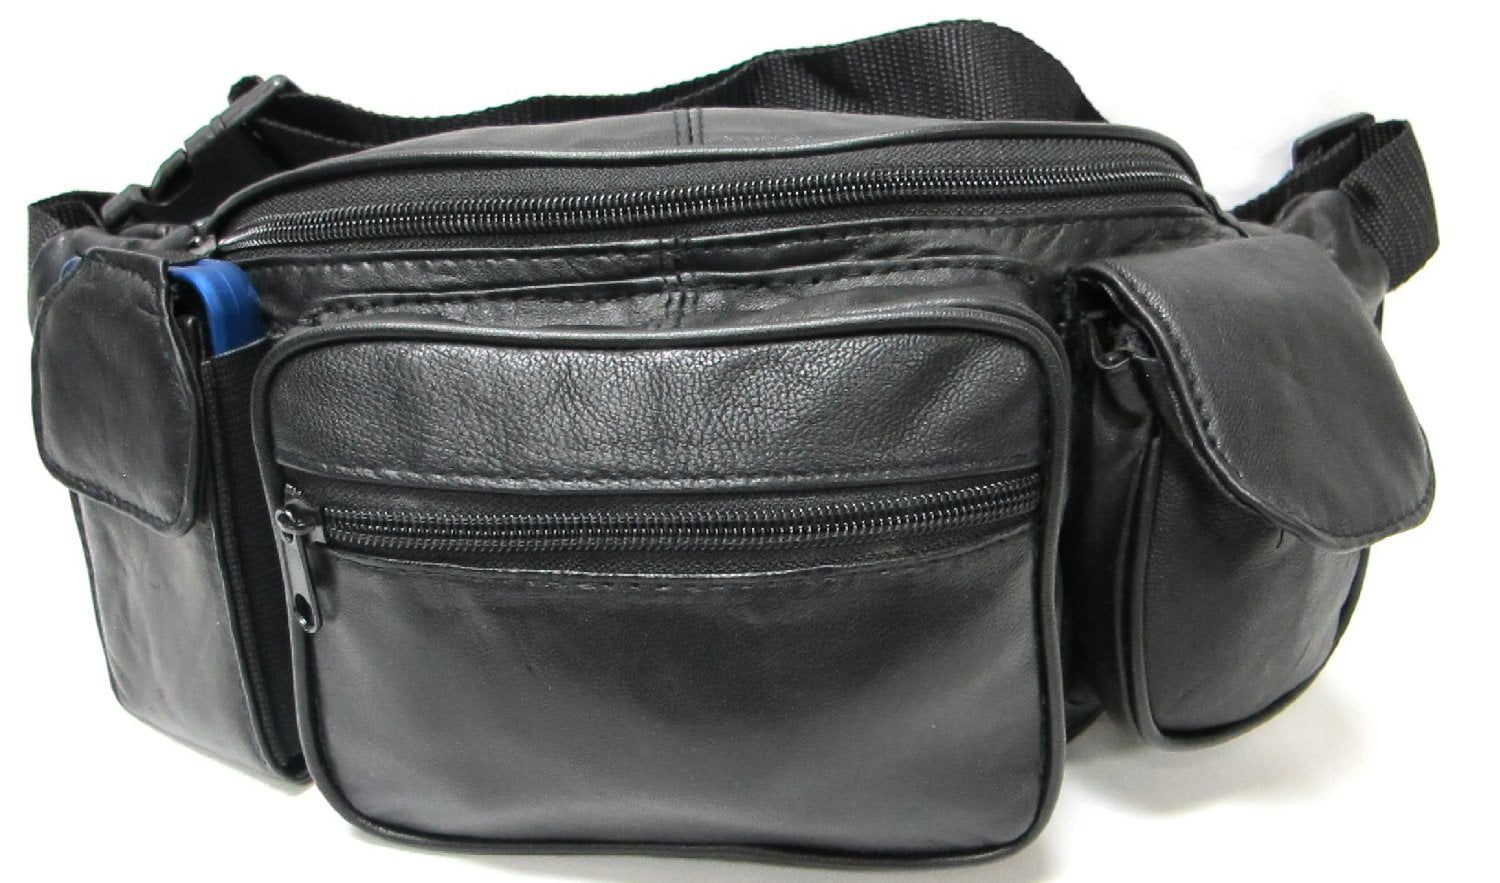 Portable Belt Extender for Fanny Pack Strap Extension Waist Bag Belts